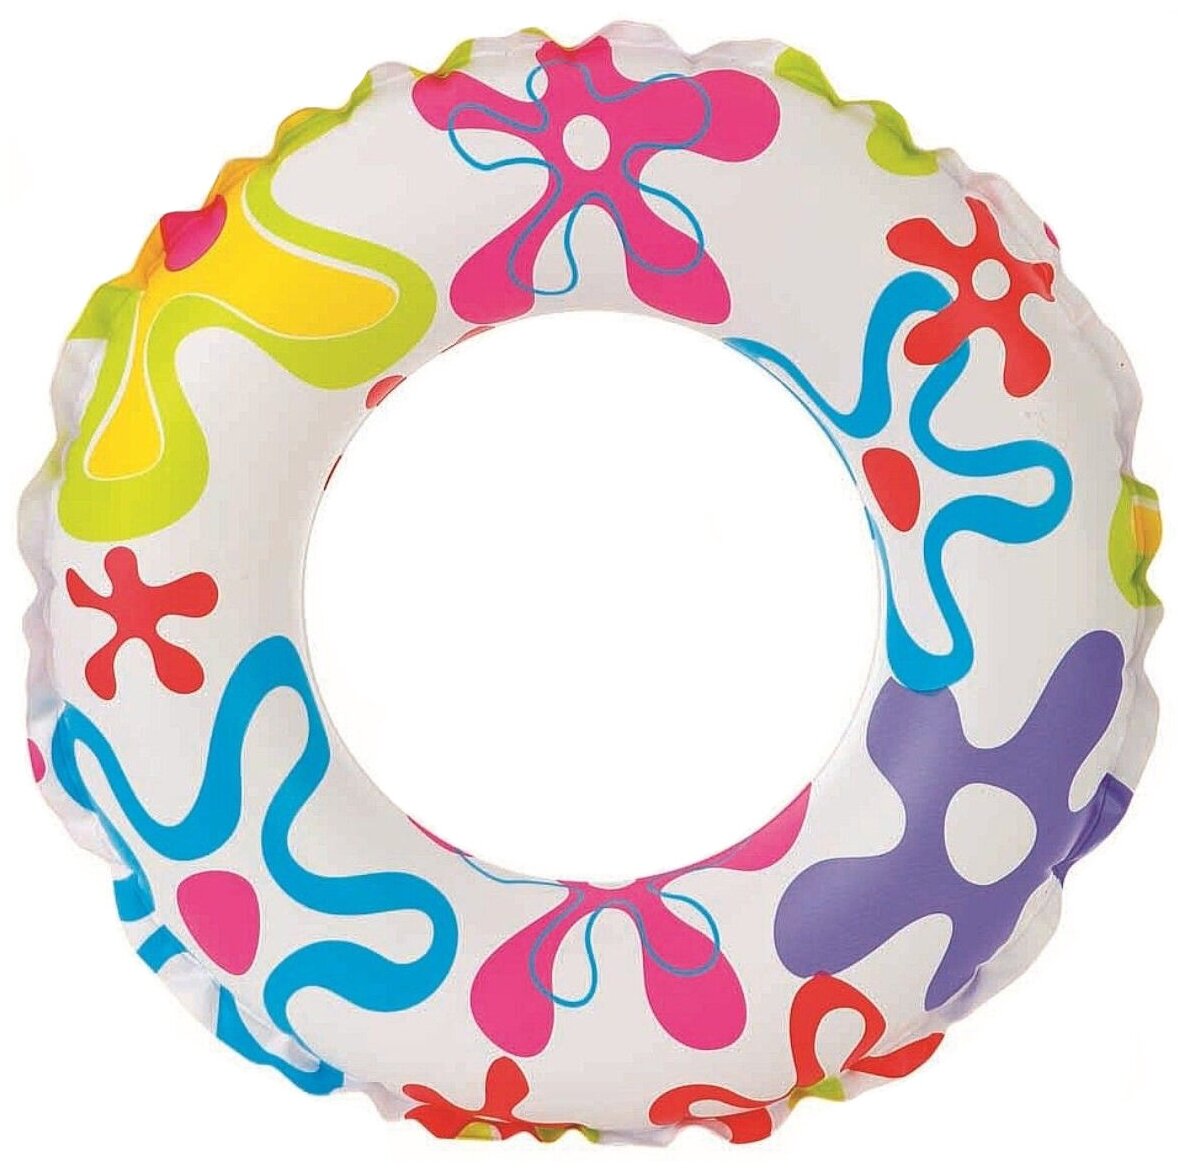 INTEX Надувной круг для плавания Lively Print, 51 см, INTEX (от 3 до 6 лет, цвета в ассортименте)